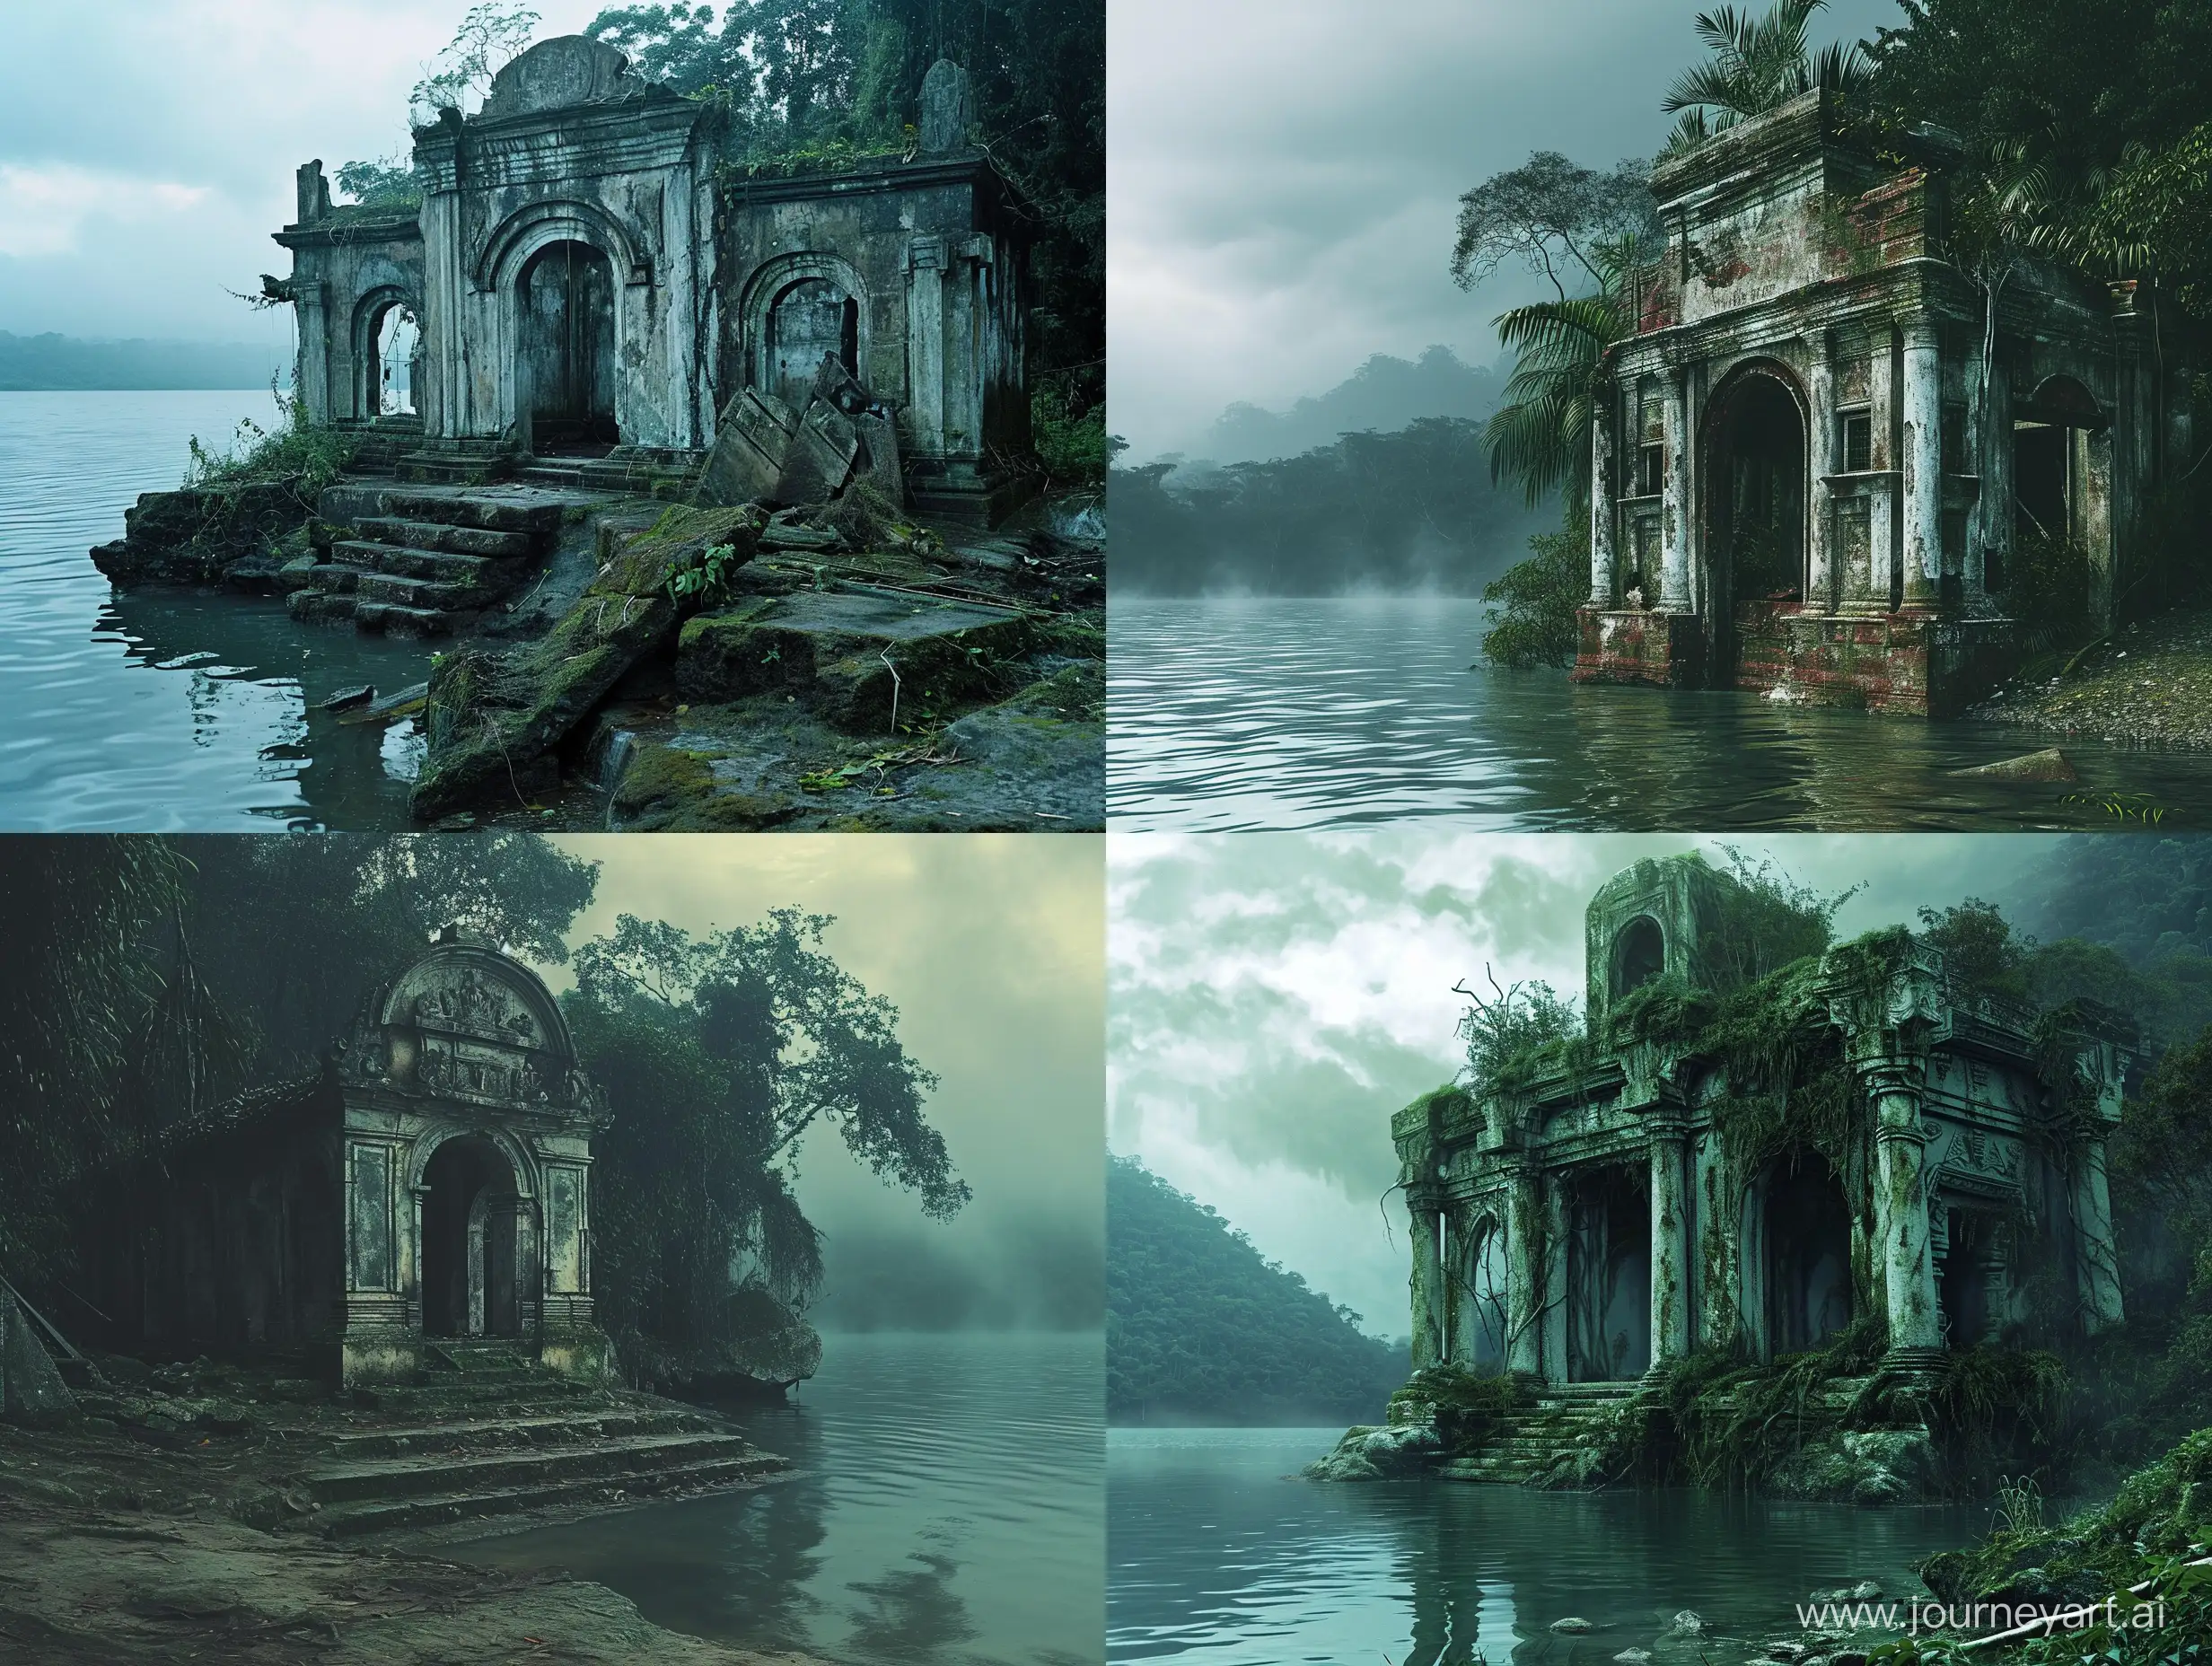 Жуткий полуразрушенный языческий храм на берегу безымянного озера в джунглях Южной Америки